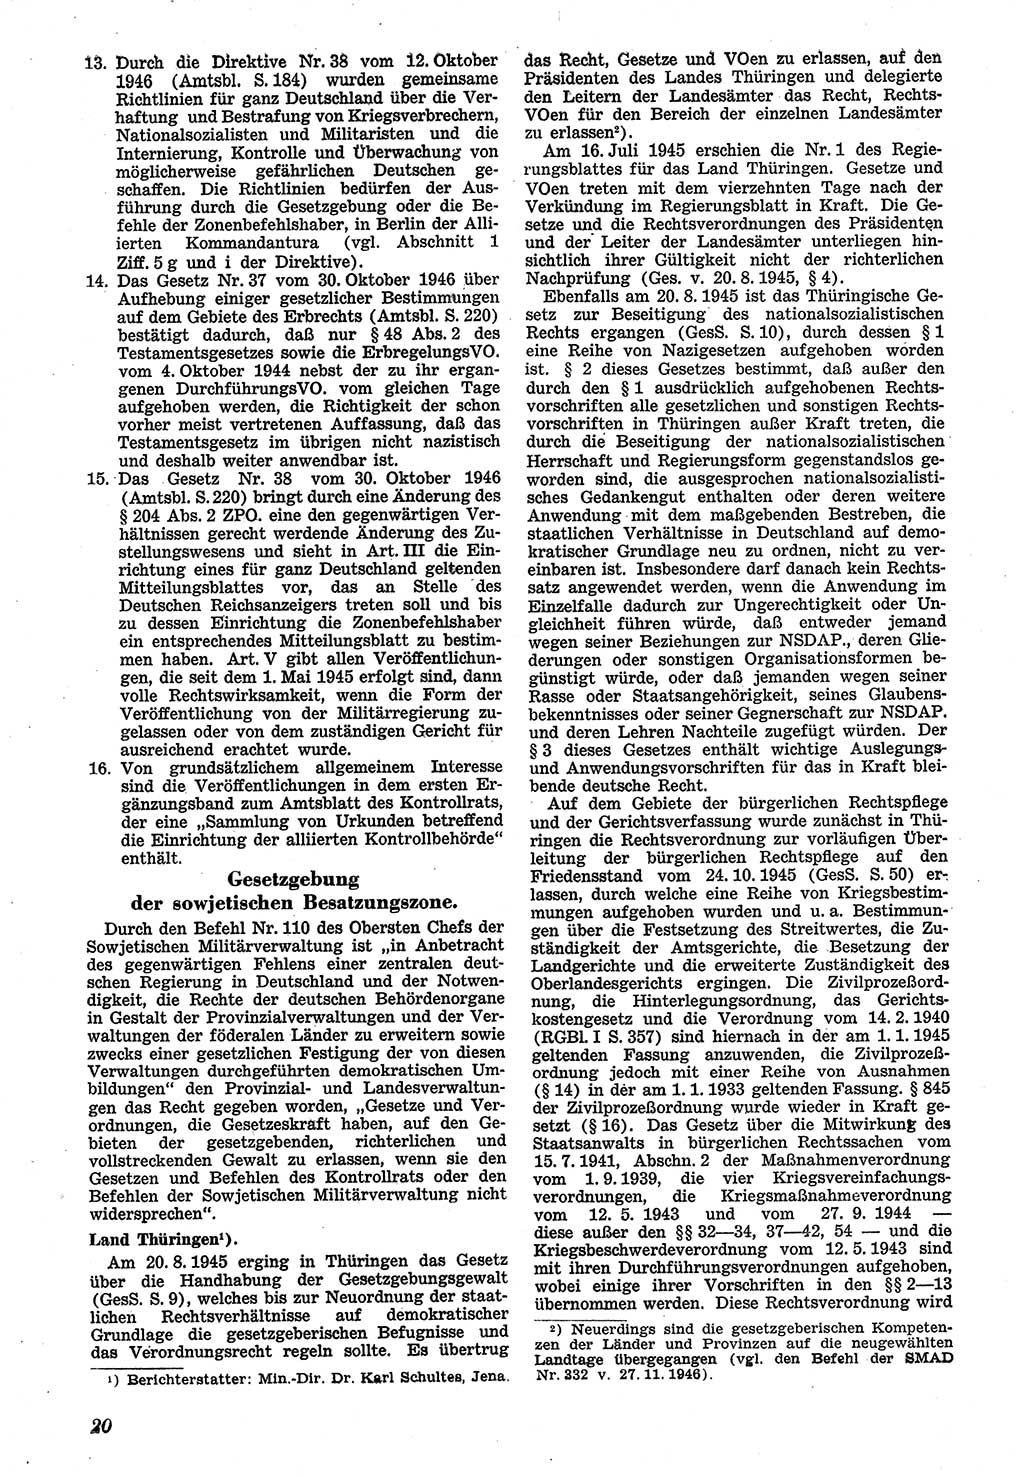 Neue Justiz (NJ), Zeitschrift für Recht und Rechtswissenschaft [Sowjetische Besatzungszone (SBZ) Deutschland], 1. Jahrgang 1947, Seite 20 (NJ SBZ Dtl. 1947, S. 20)